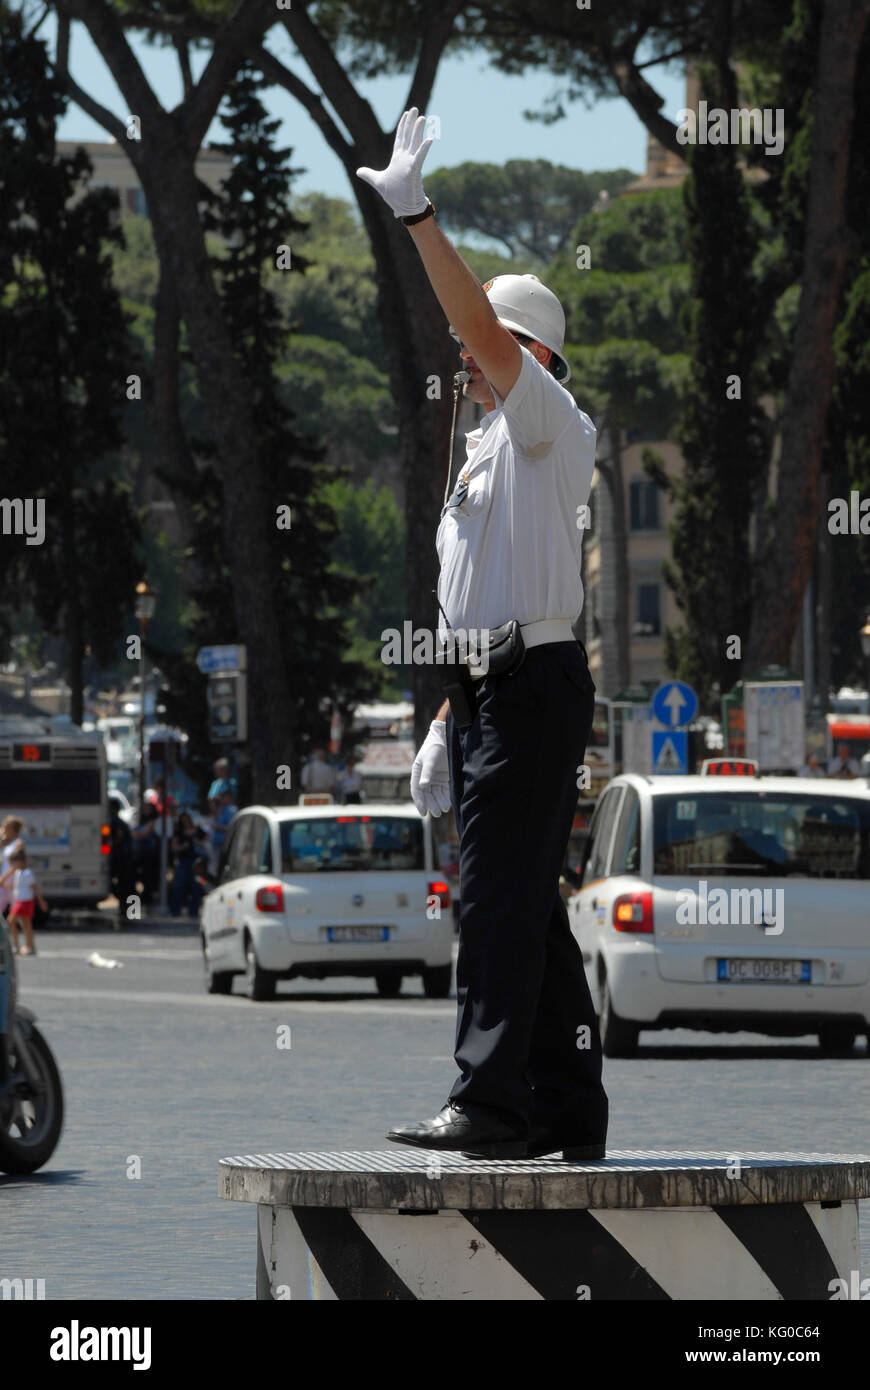 Rome, Italie - 11 juin 2009 : policier à rome, dirige le trafic sur la piazza Venezia, à rome Banque D'Images